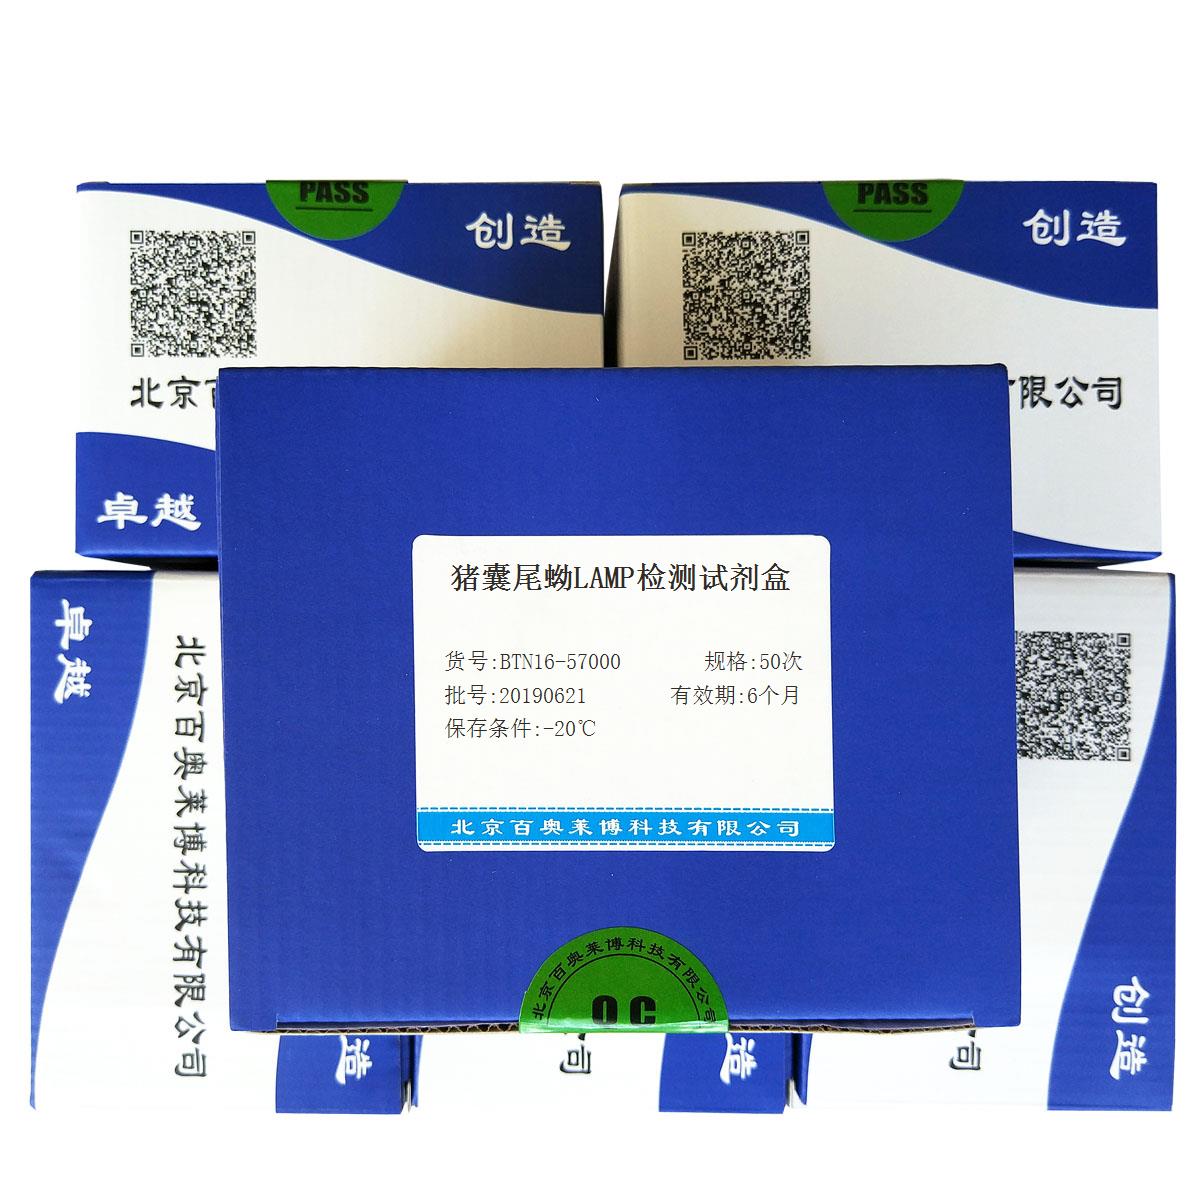 猪囊尾蚴LAMP检测试剂盒北京现货